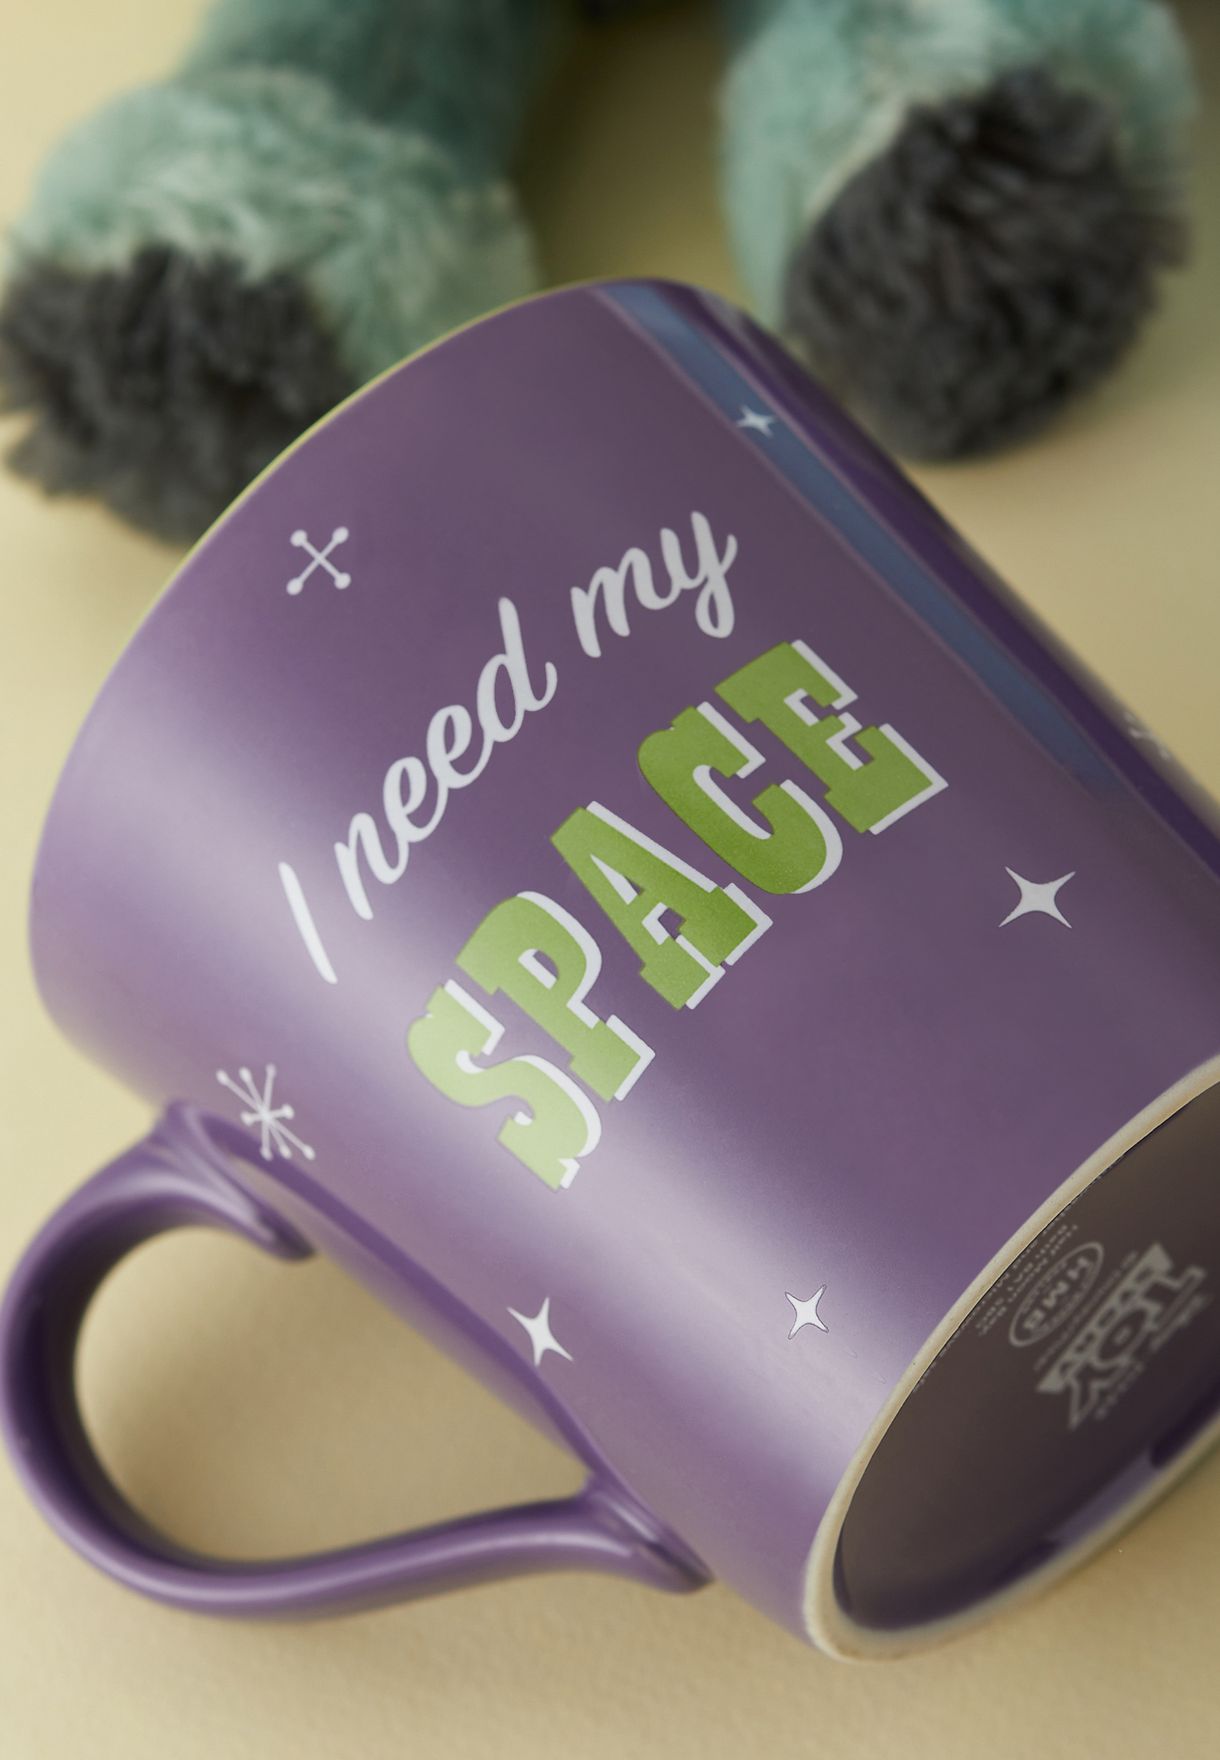 Toy Story Buzz Lightyear Mug